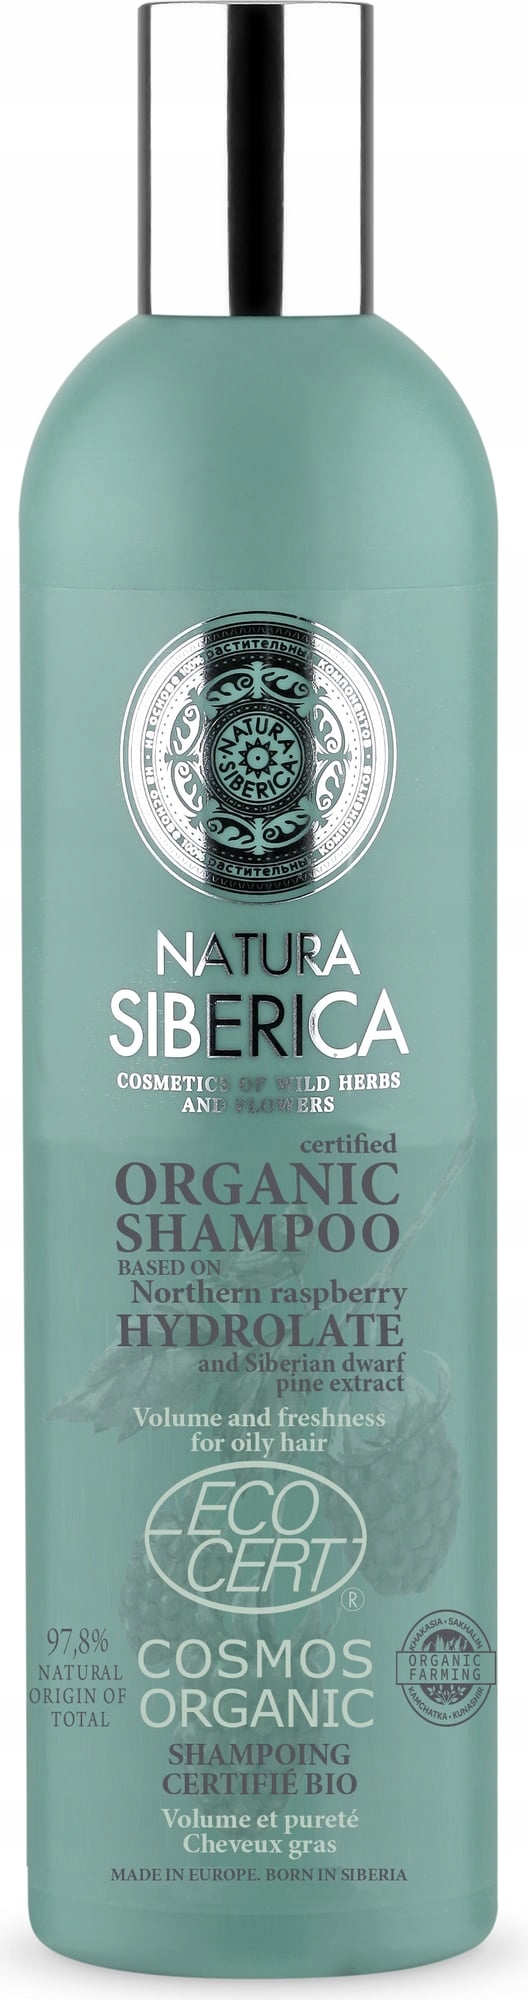 natura siberica szampon wzmacniający i nadający objętość